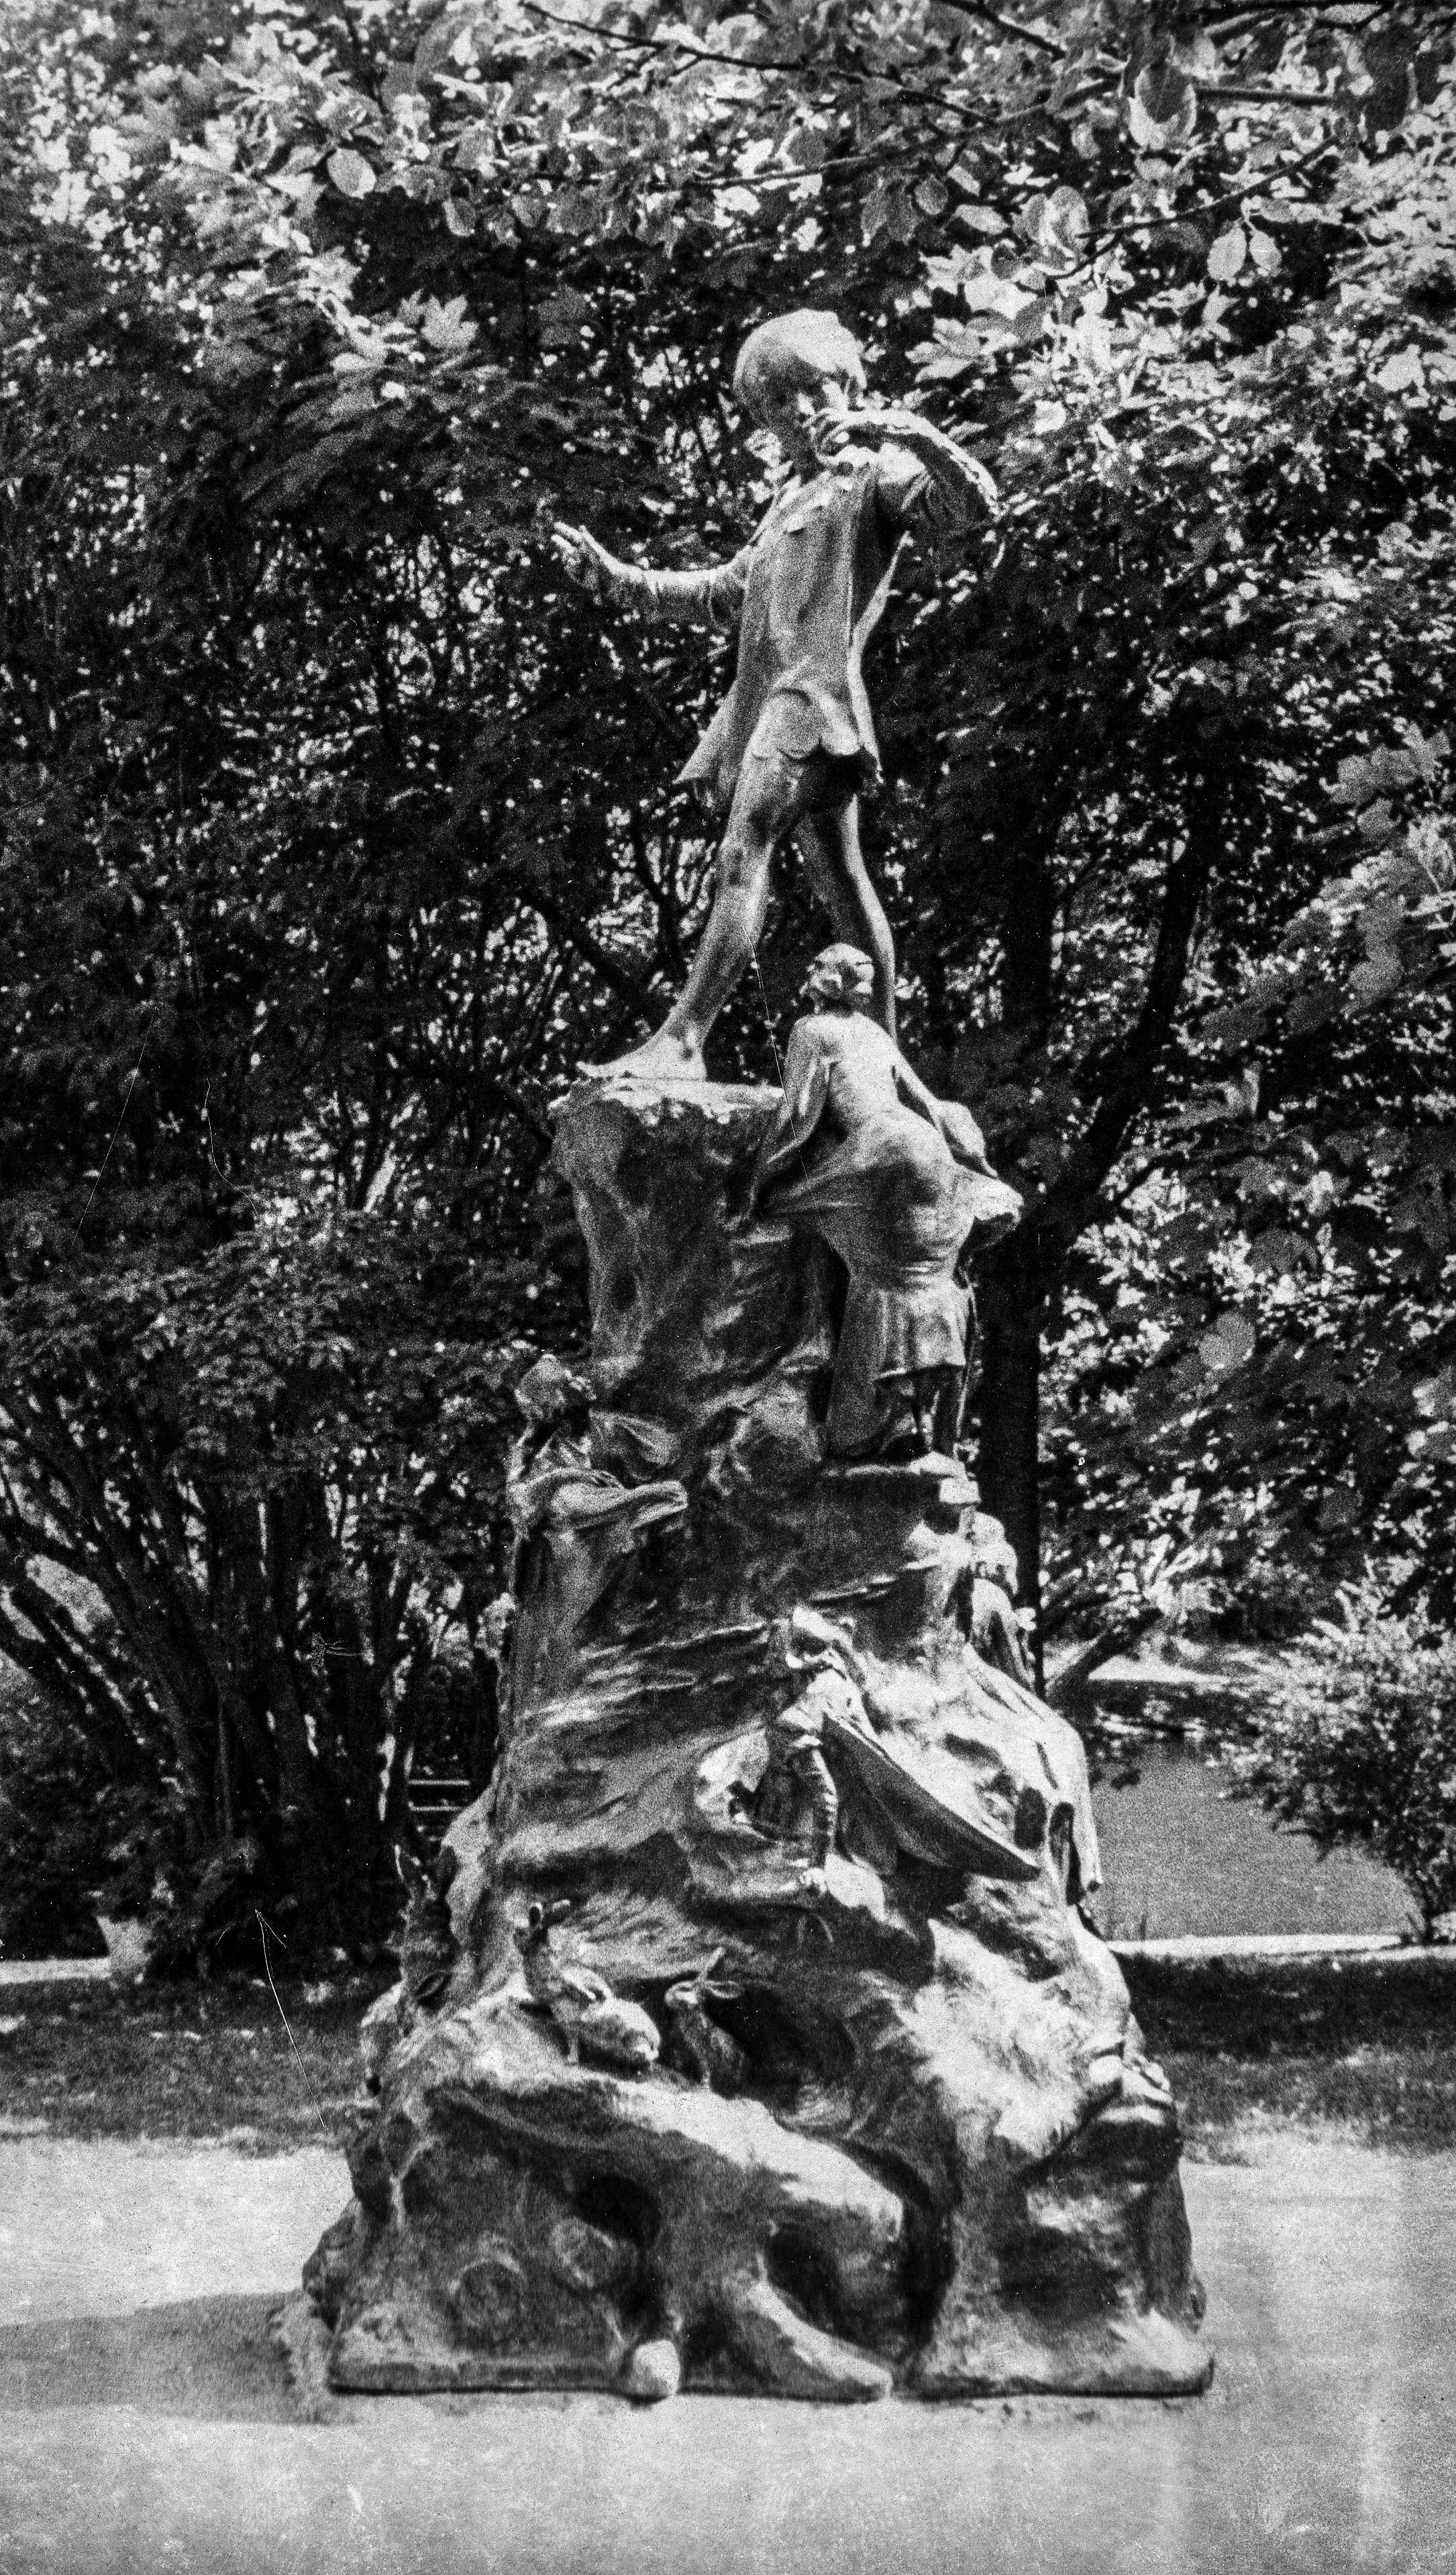 Photographie en noir et blanc de la statue de Peter Pan. Grande statue avec des animaux, des gens et un garçon se tenant debout au sommet.